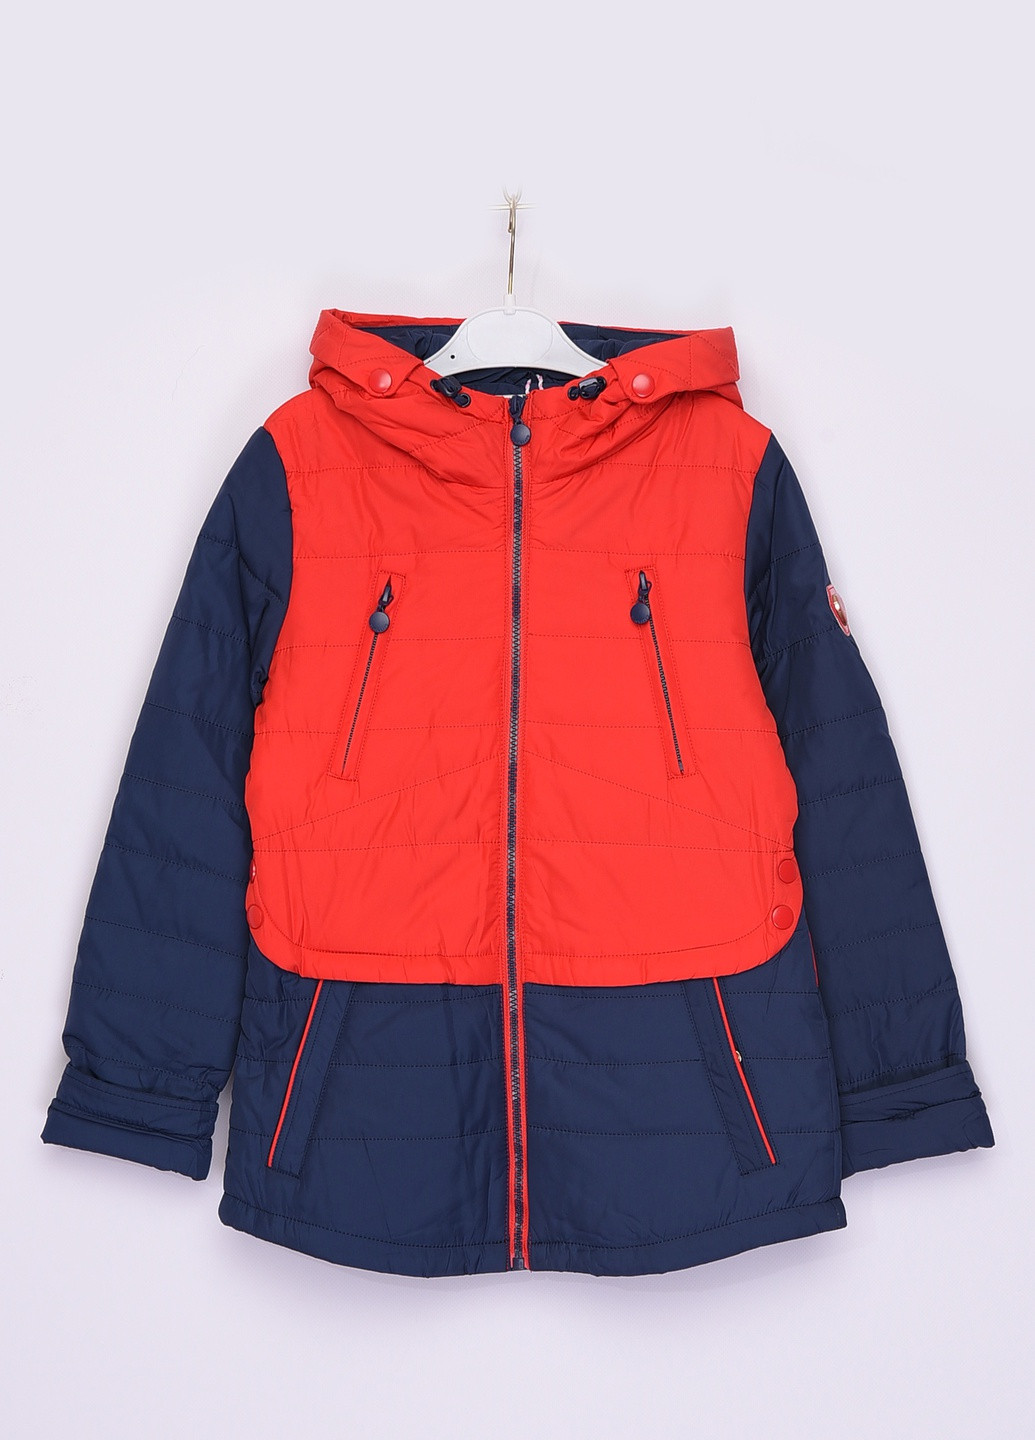 Червона демісезонна куртка дитяча демісезон красно - синя з капюшоном Let's Shop